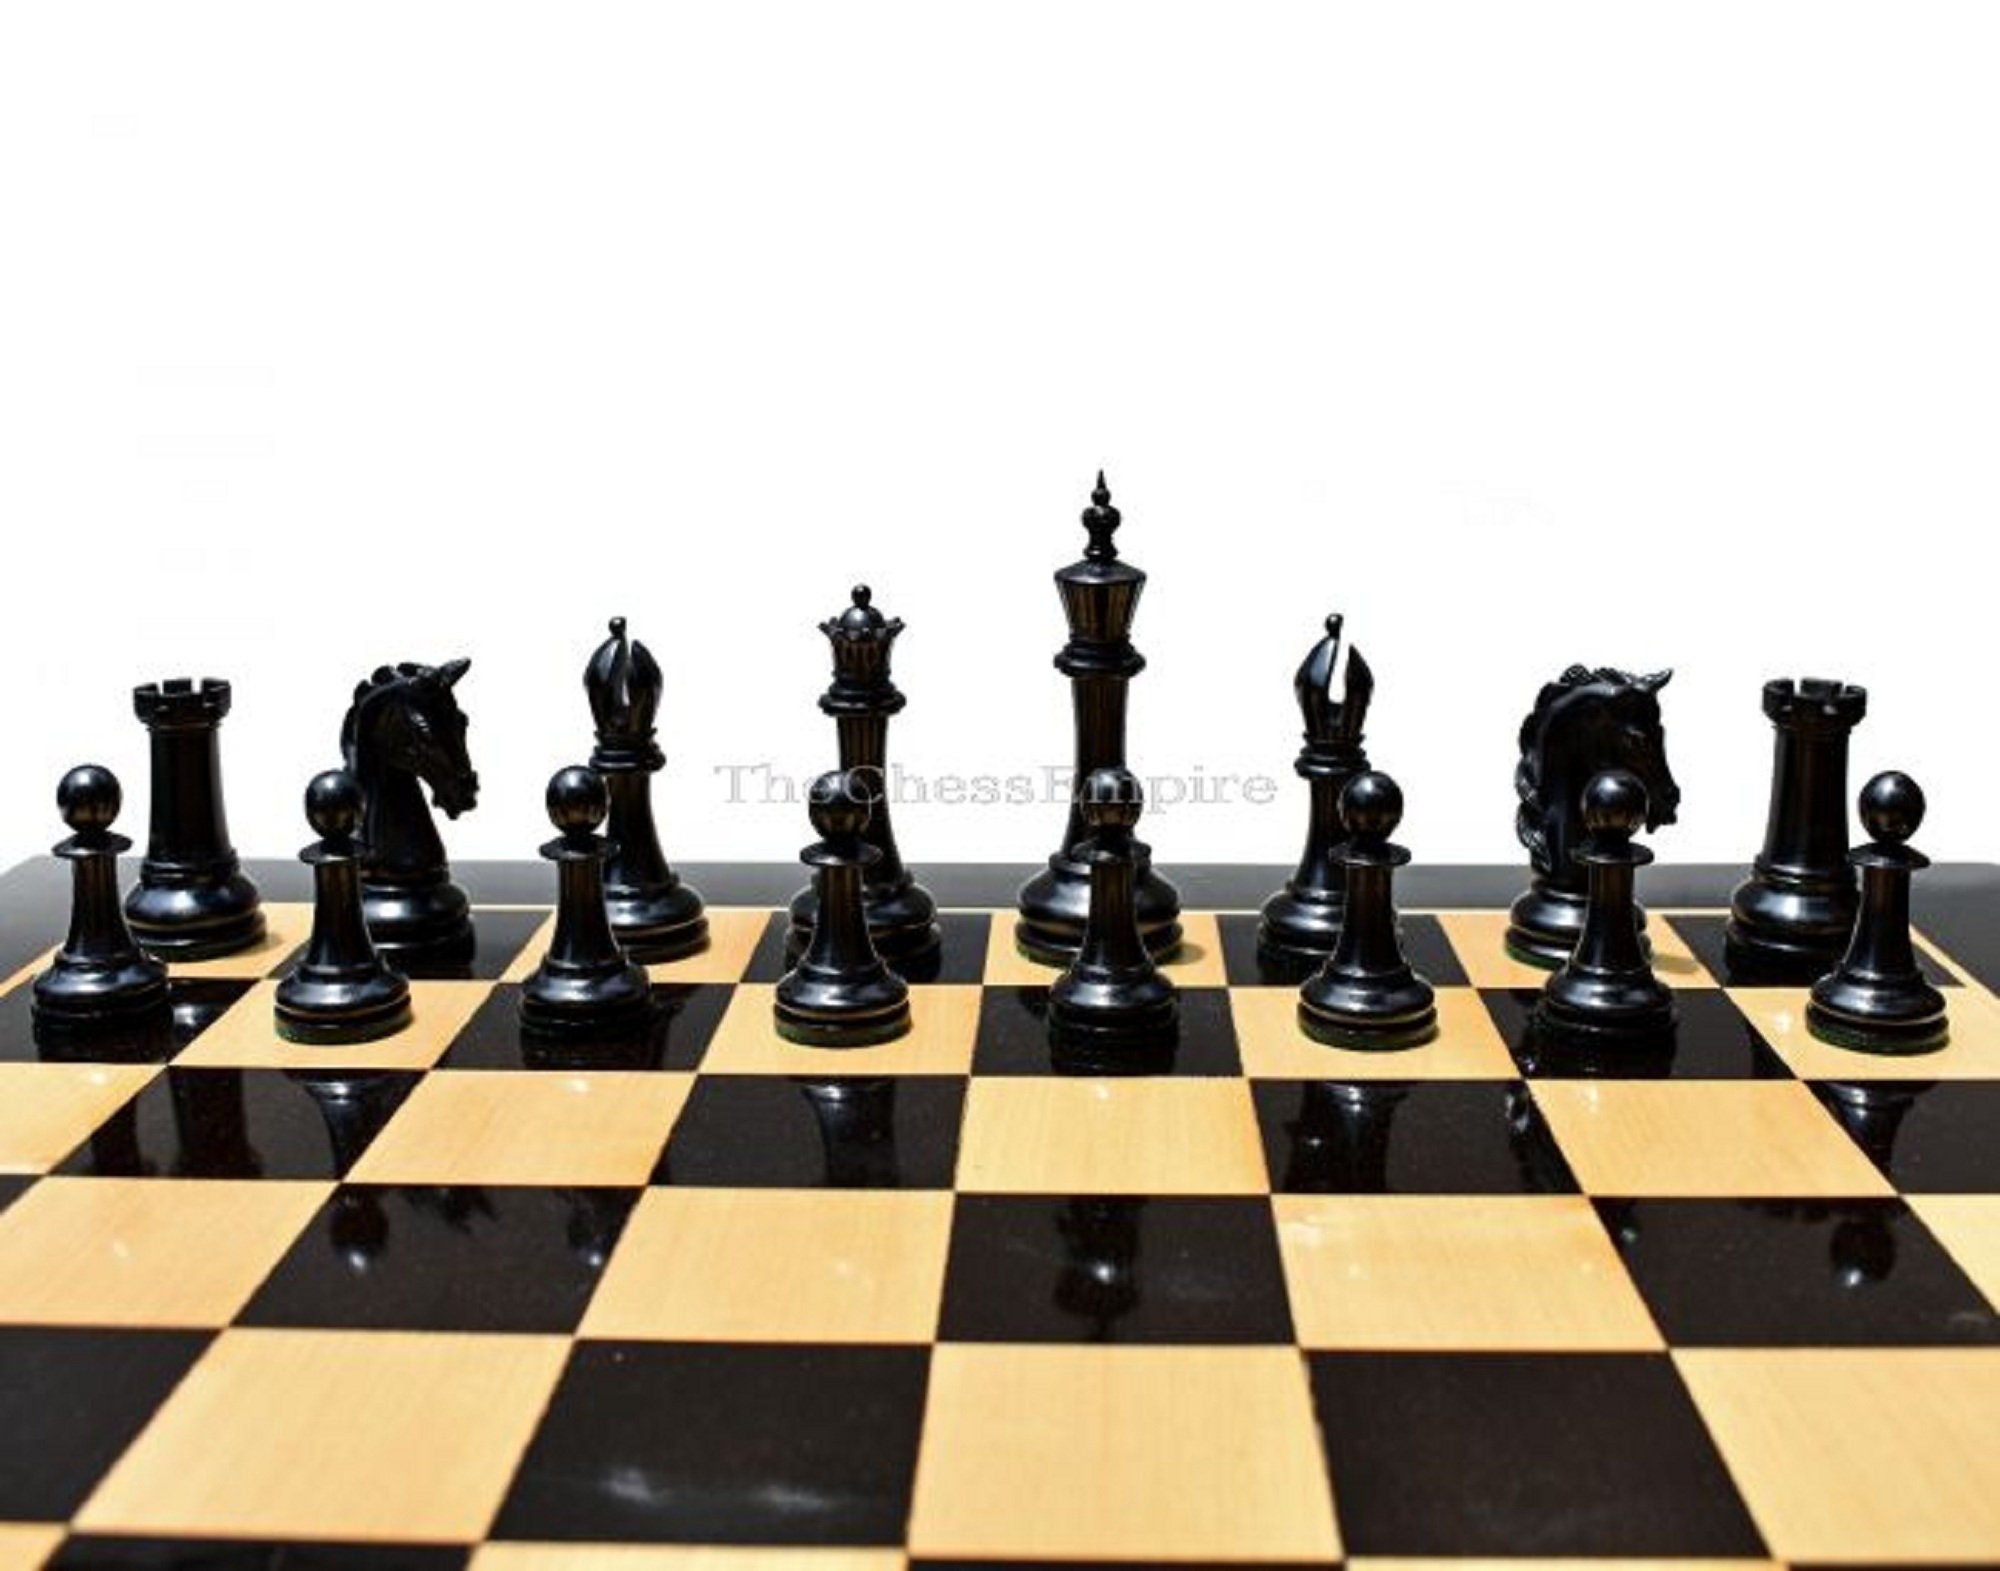 ♟𝐆𝐎𝐋𝐃 𝐂𝐎𝐍𝐓𝐄𝐌𝐏𝐎𝐑𝐀𝐑𝐘 𝐂𝐇𝐄𝐒𝐒 𝐒𝐄𝐓♟ Este juego de ajedrez  de mesa destaca elegancia y armonía entre sus piezas doradas y negras  metálicas perfec…